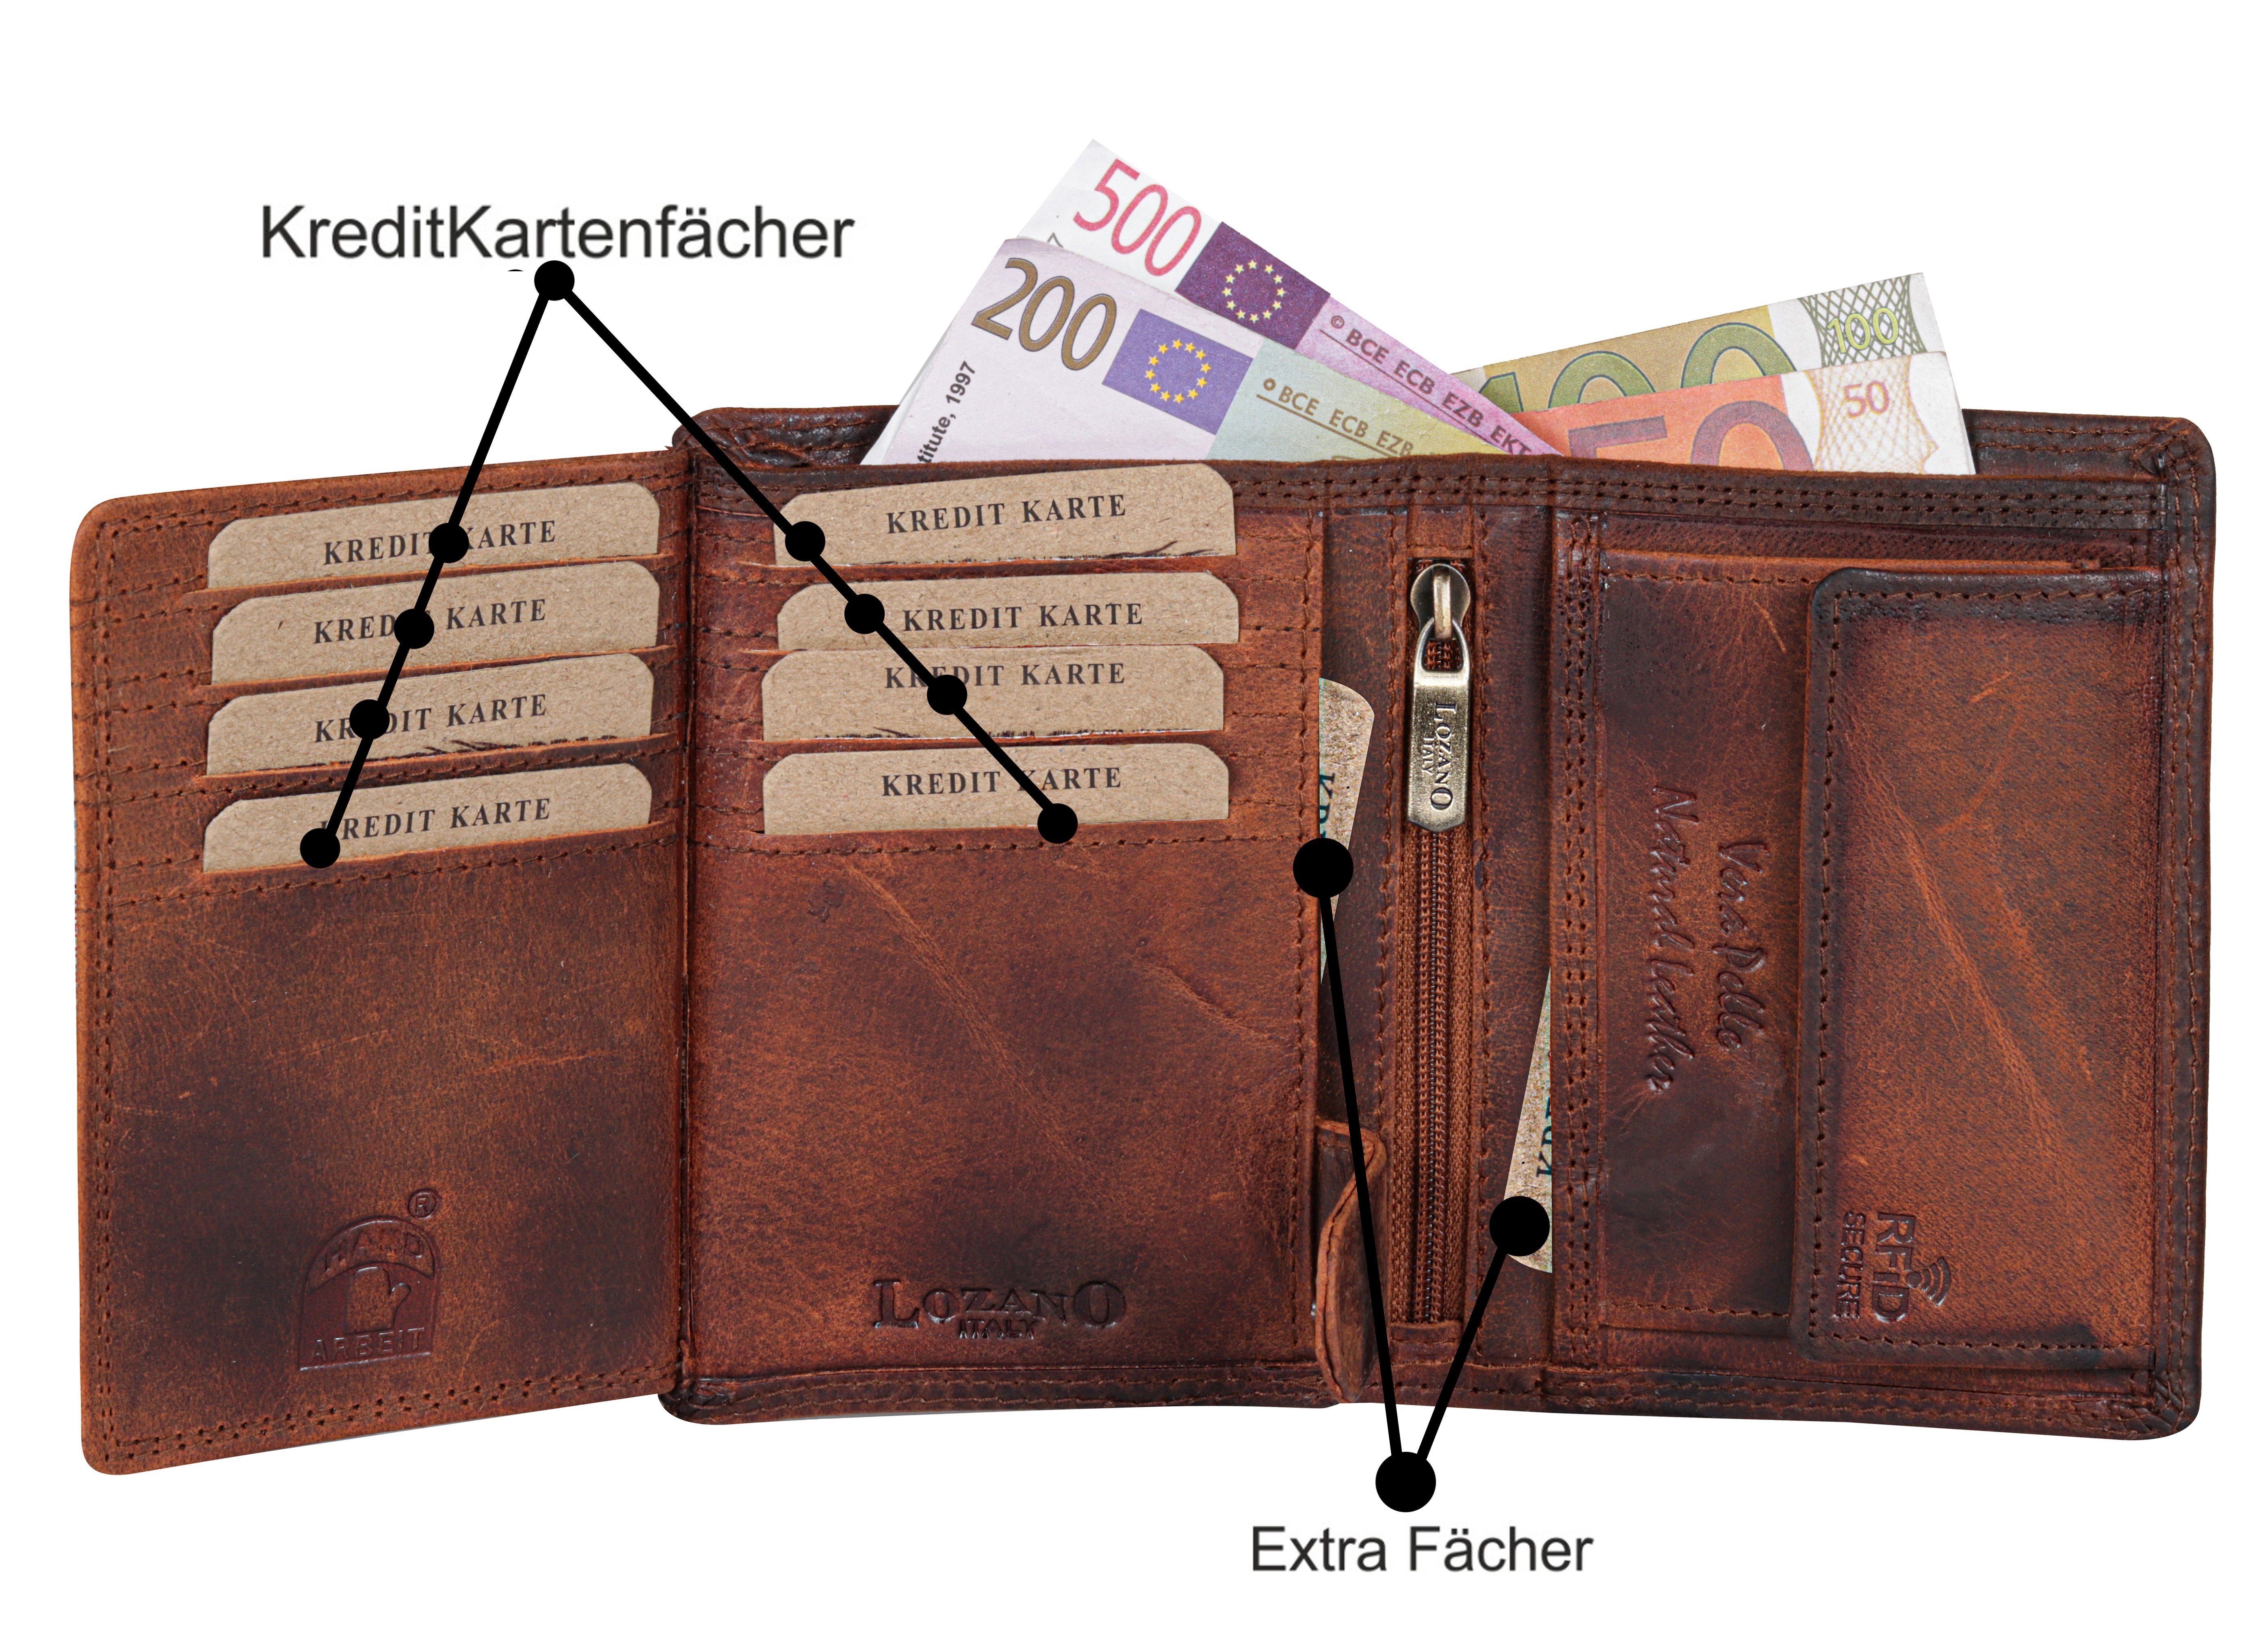 SHG Geldbörse Herren Börse RFID Schutz Brieftasche Münzfach Portemonnaie, Büffelleder Lederbörse mit Leder Männerbörse